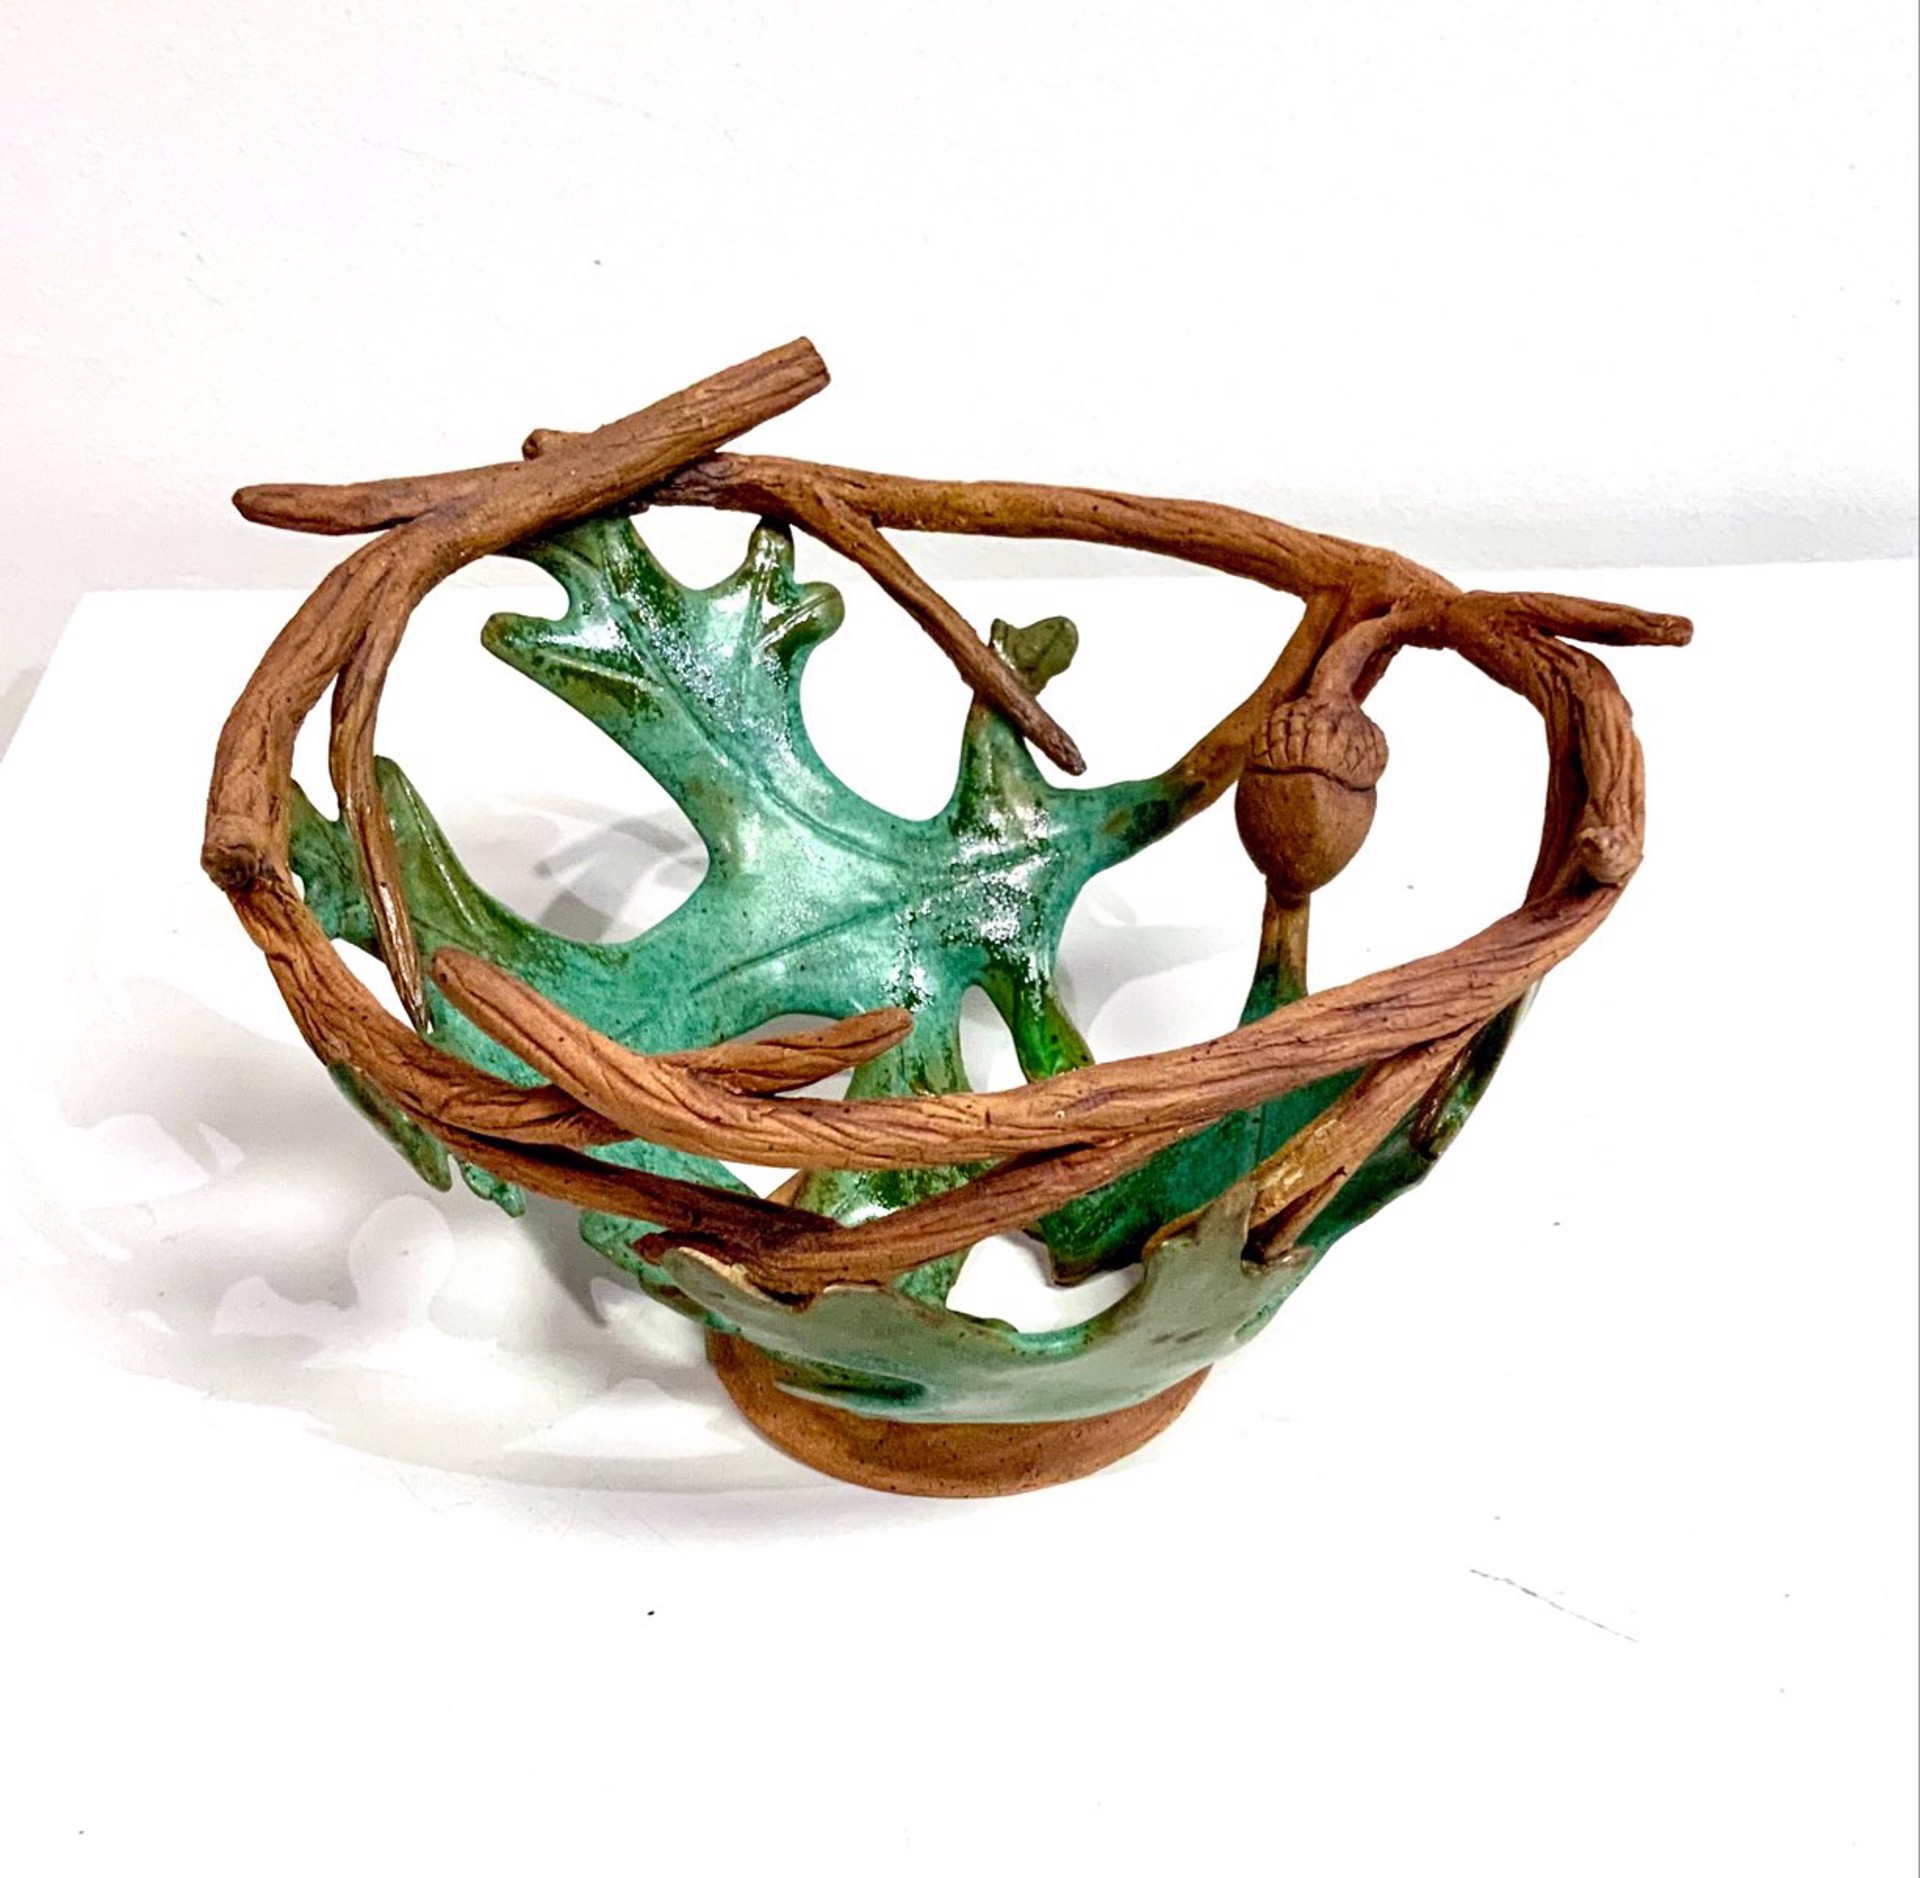 Oak Leaf Bowl by Janet Leazenby